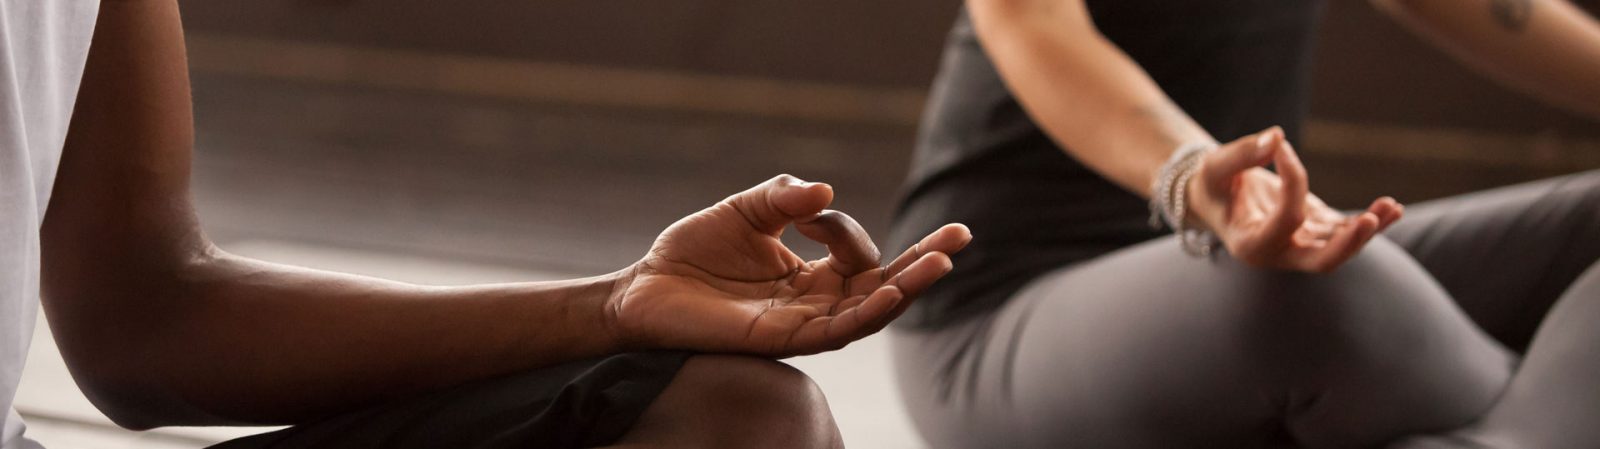 yoga hand mudra